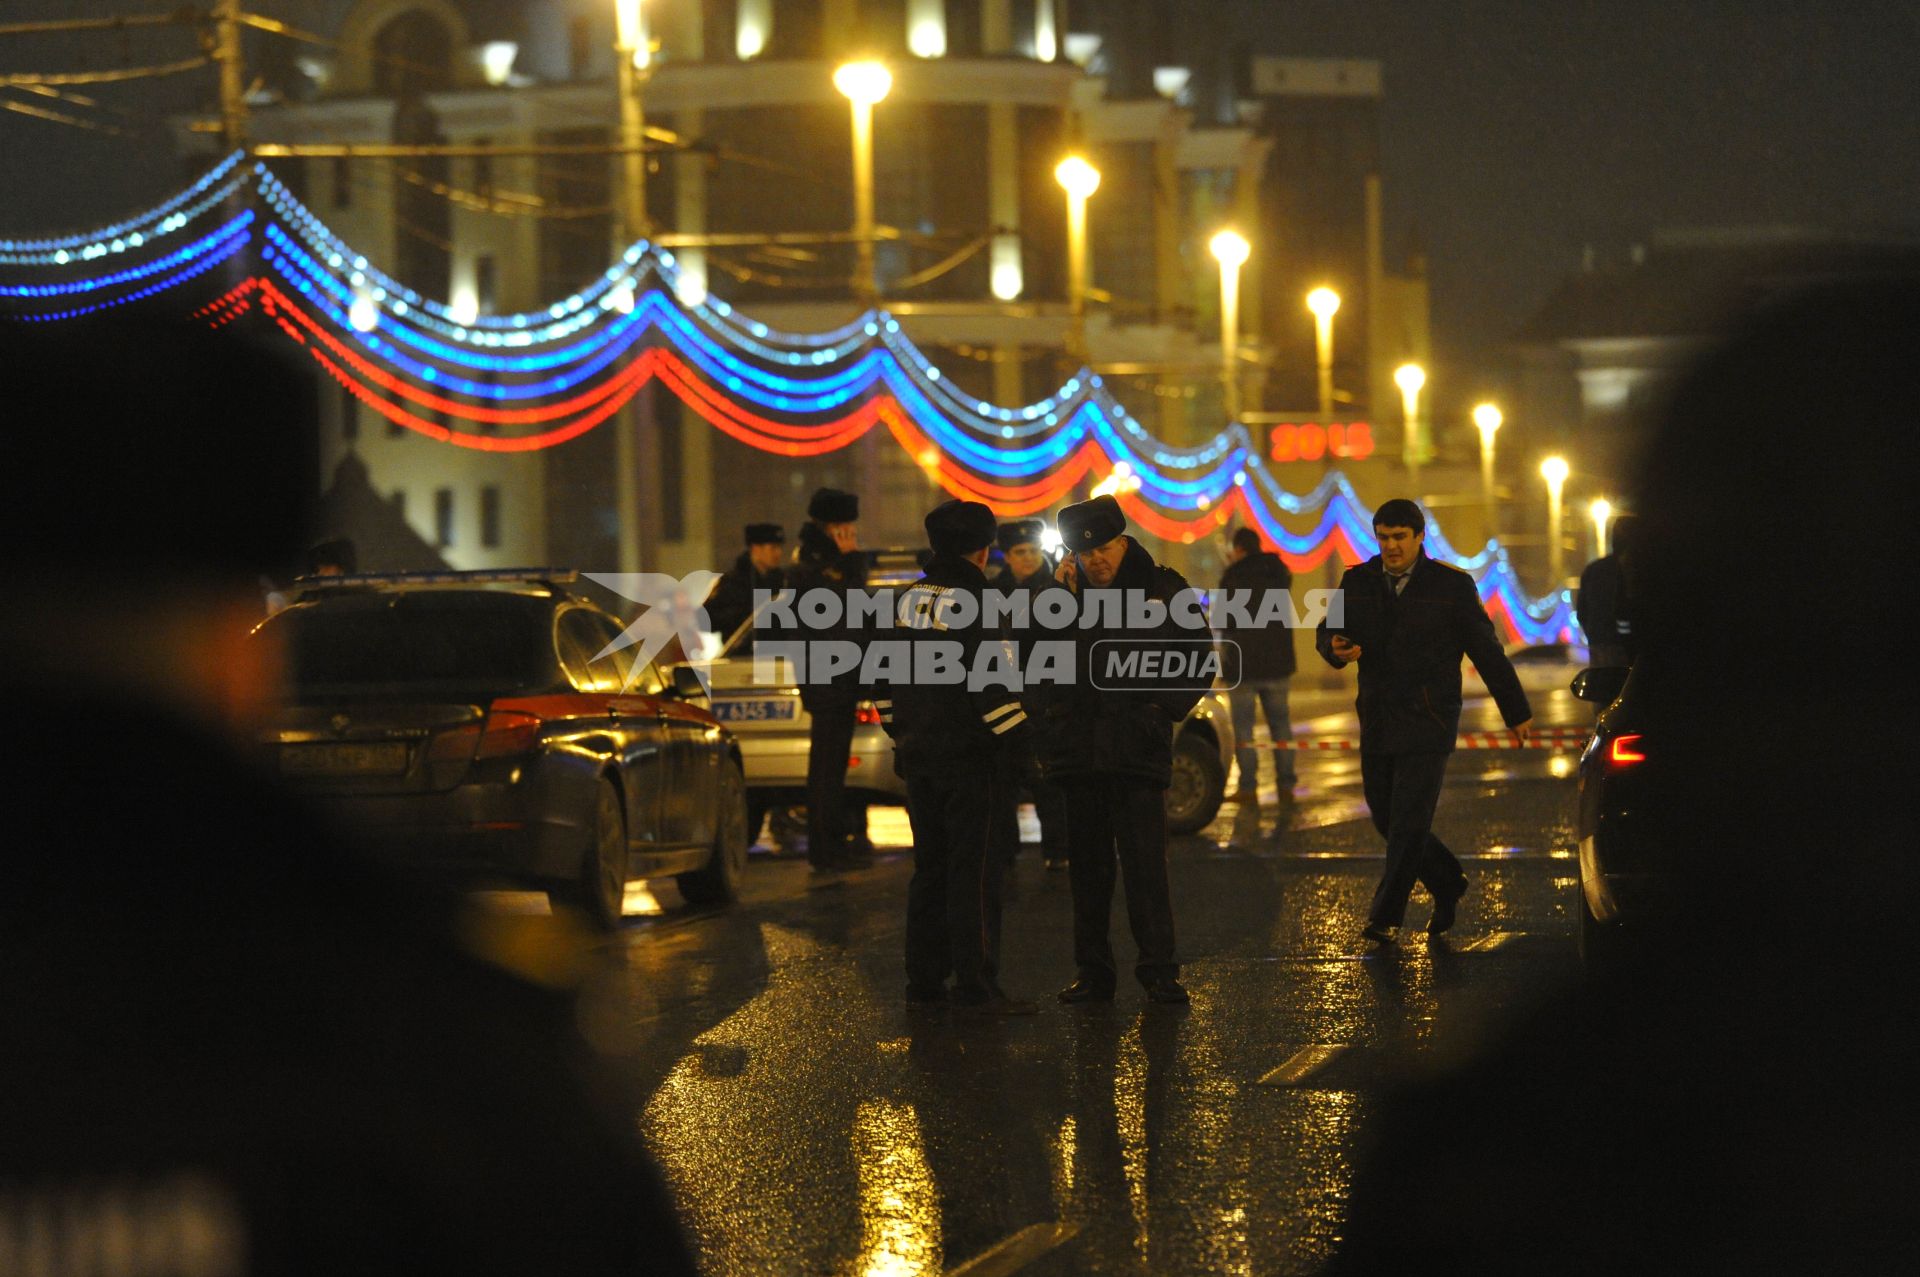 Сотрудники полиции на месте убийства политика Бориса Немцова, который был застрелен на Большом Москворецком мосту в ночь с 27-го на 28-е февраля 2015 г. в Москве.